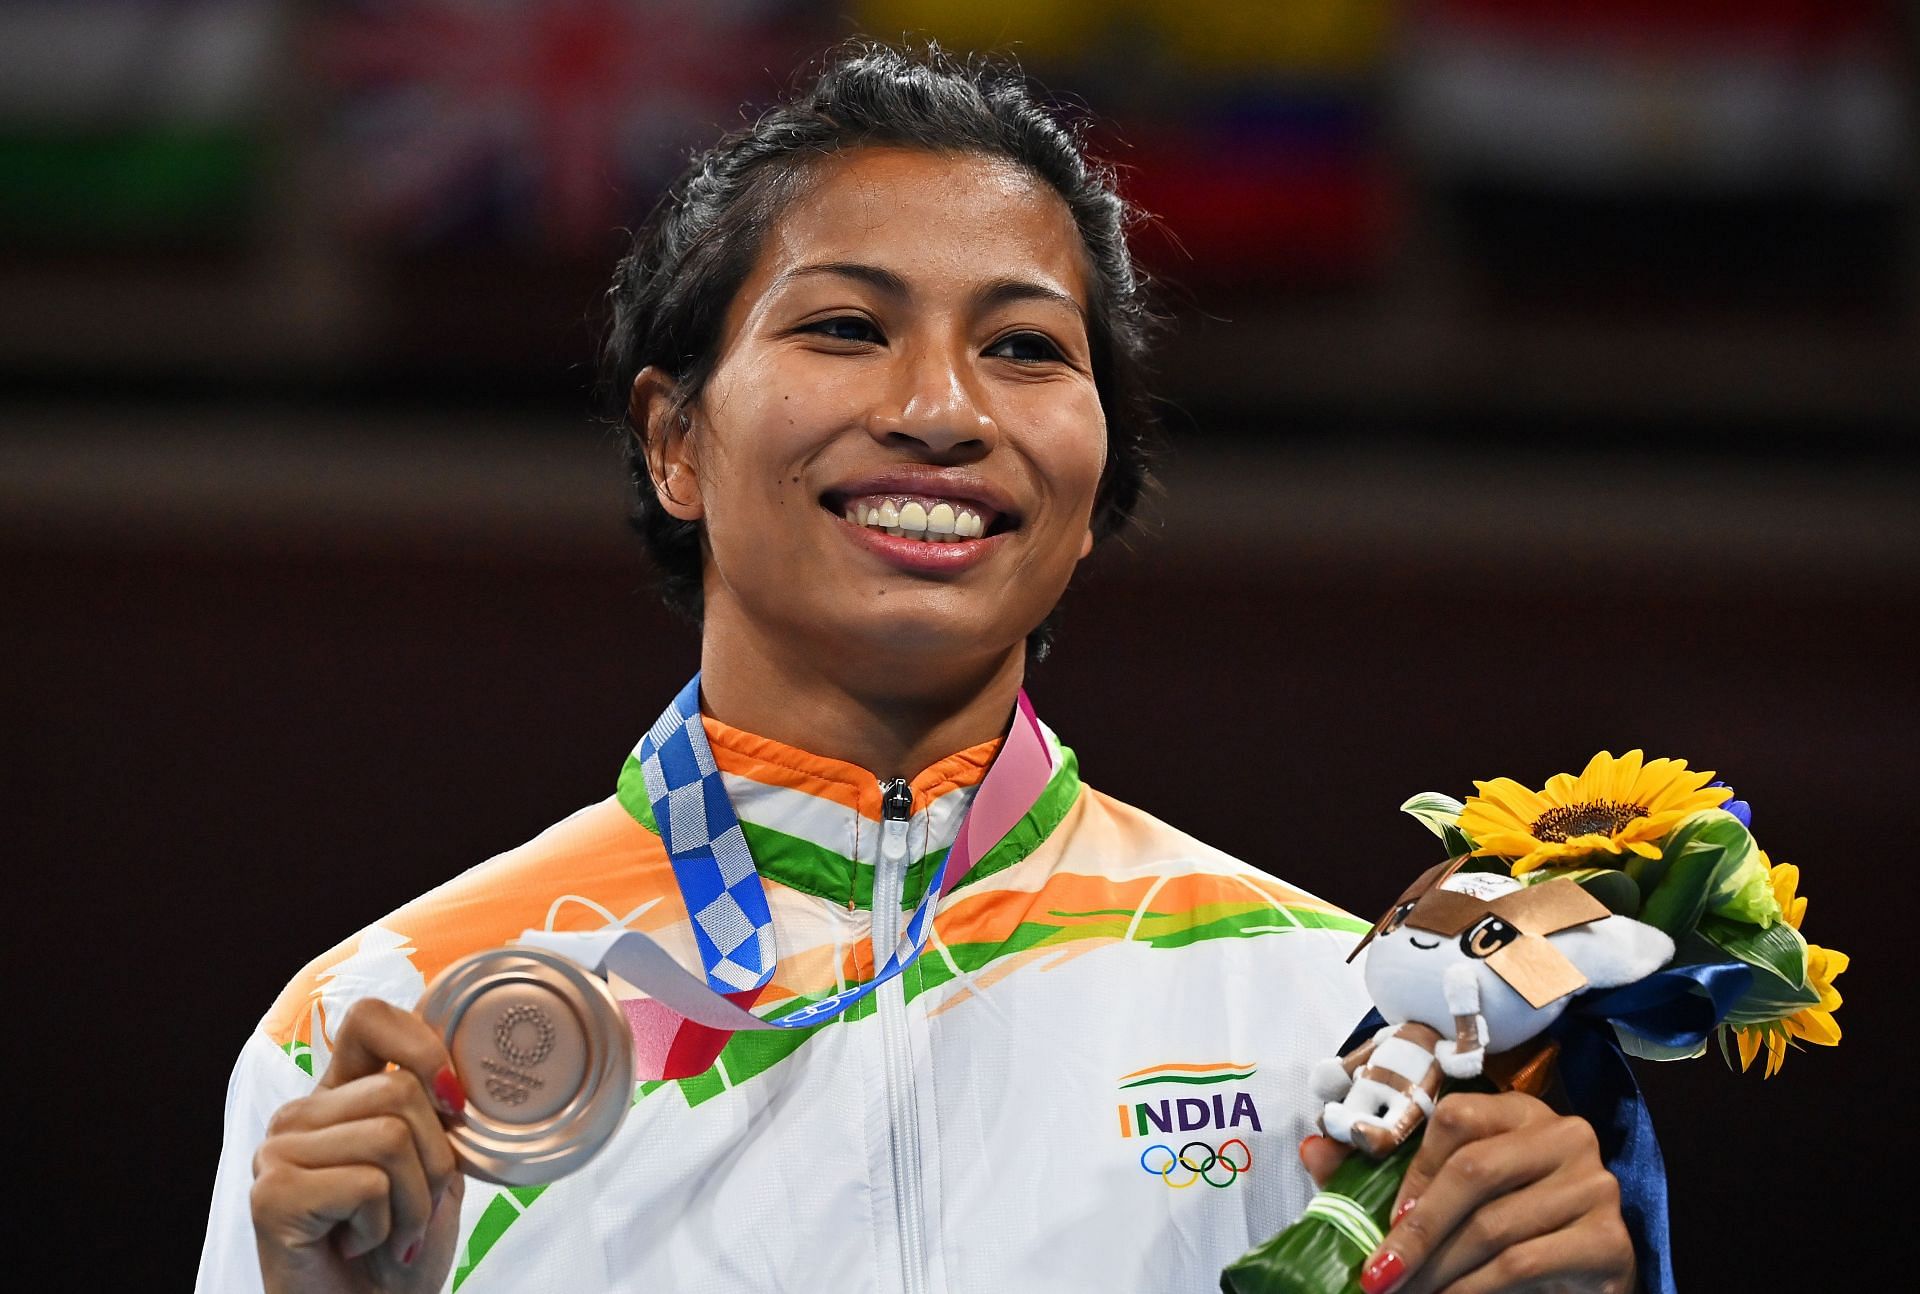 Lovlina Borgohain won bronze medal at the Tokyo Olympics.